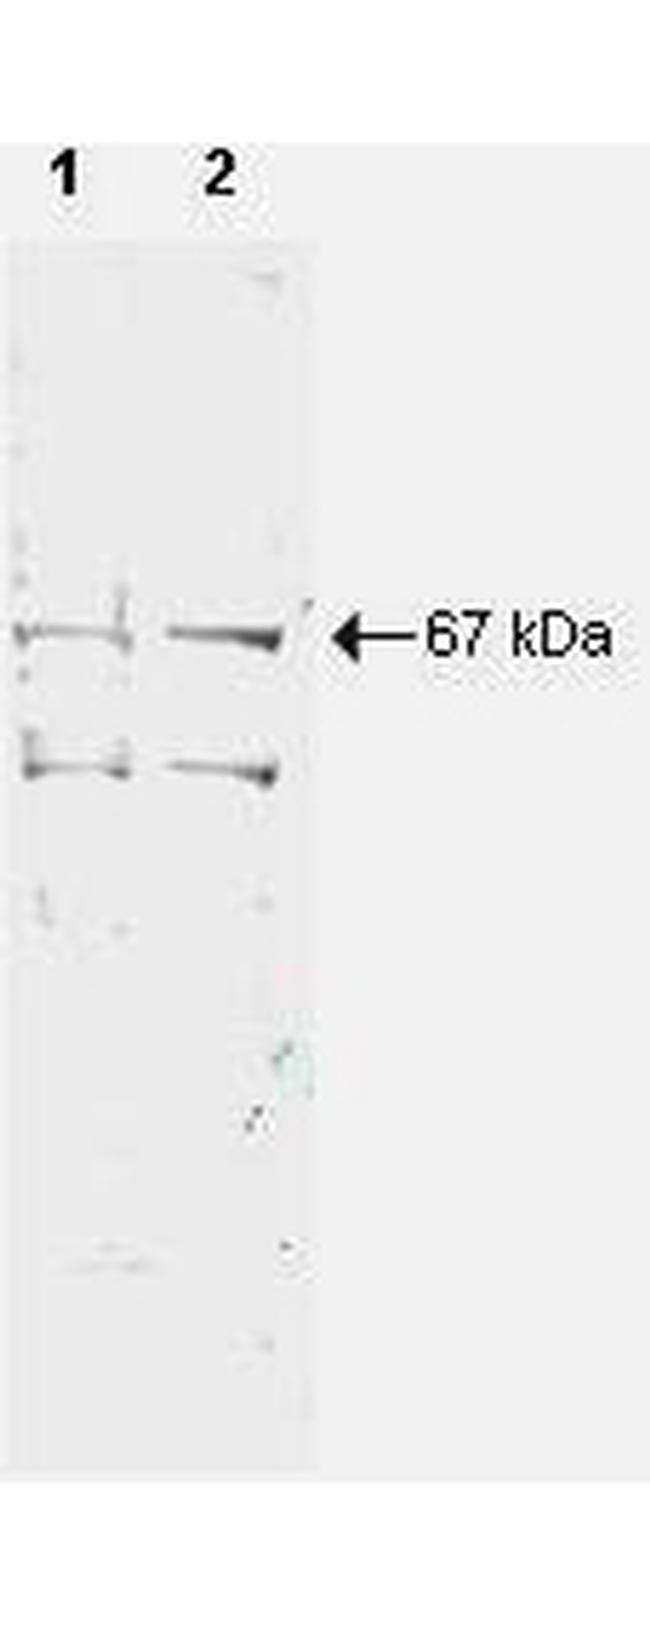 NRF1 Antibody in Western Blot (WB)